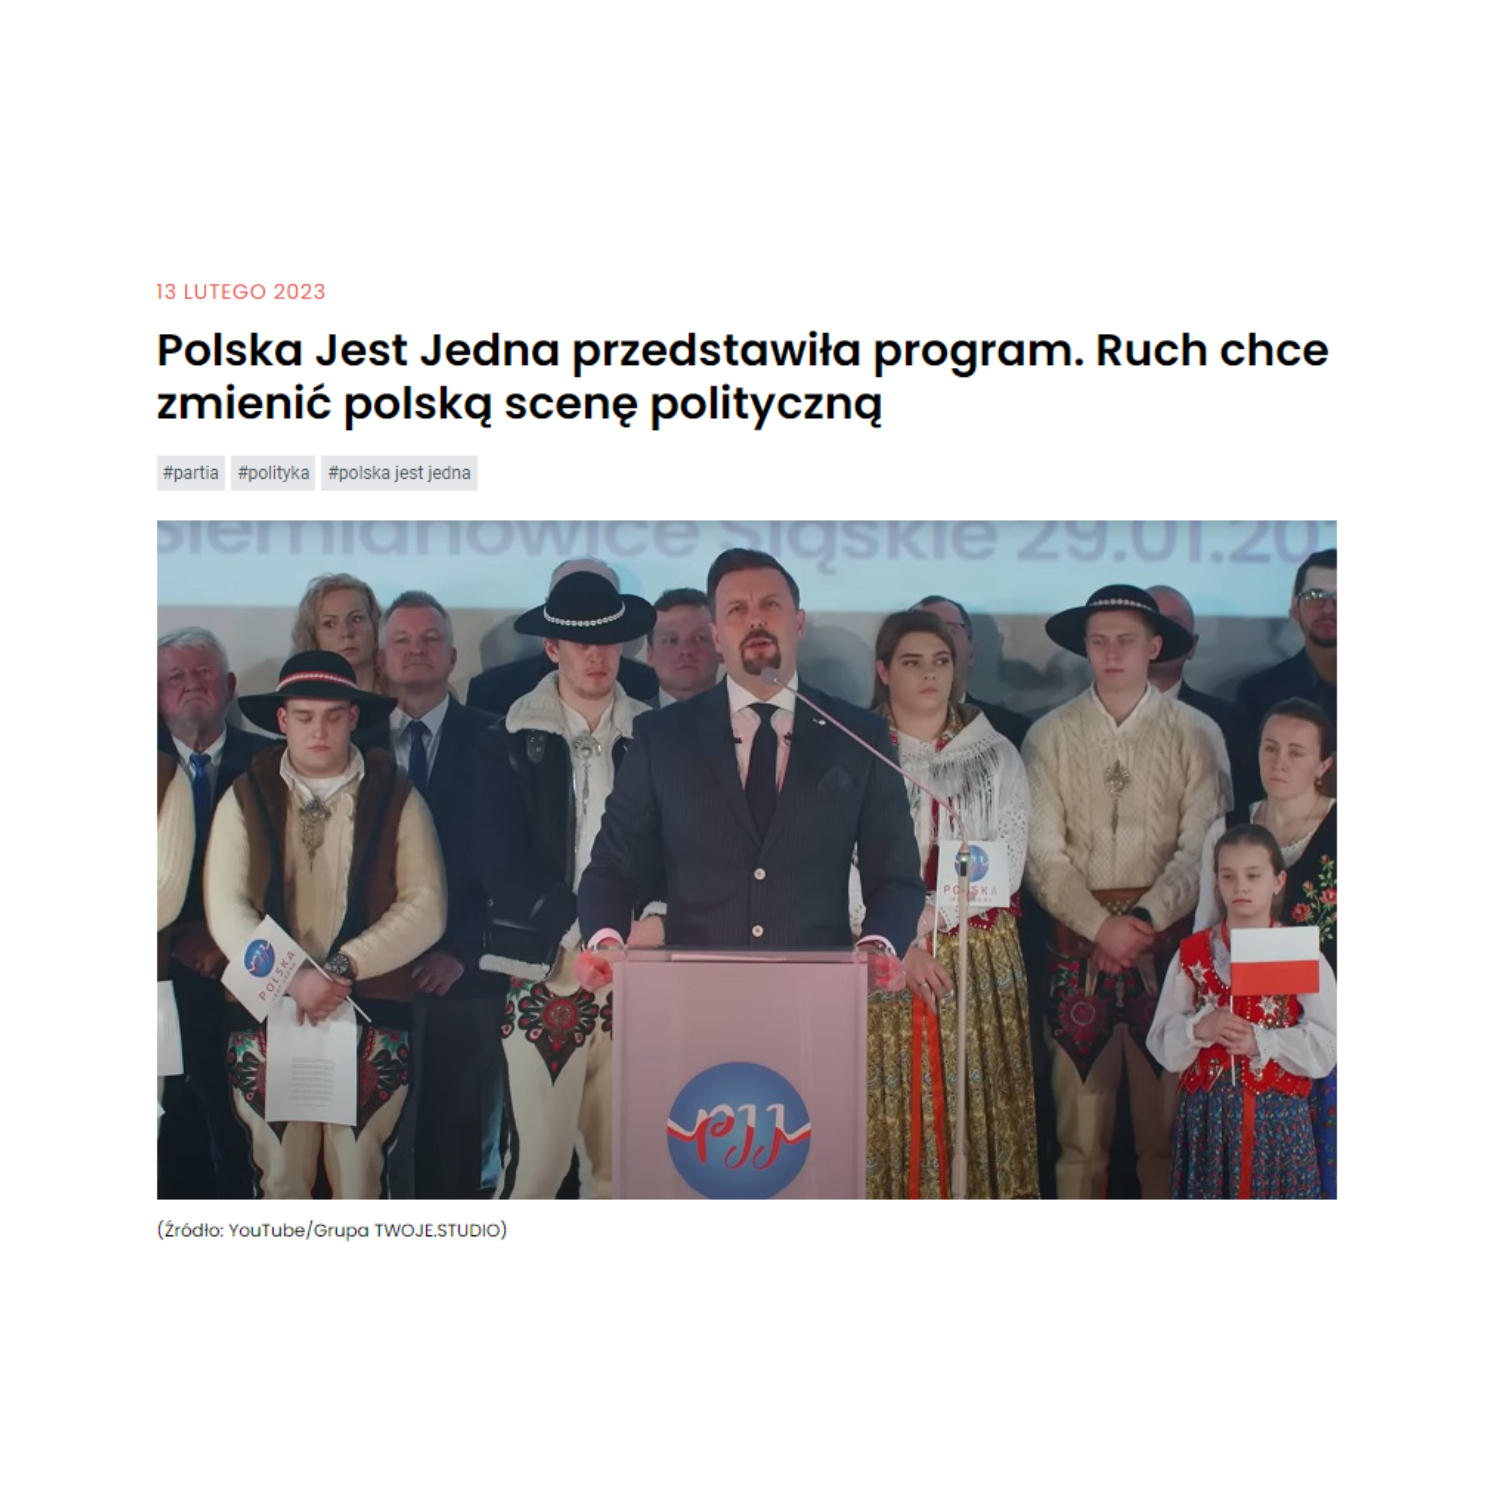 pch24.pl | Polska Jest Jedna przedstawiła program. Ruch chce zmienić polską scenę polityczną